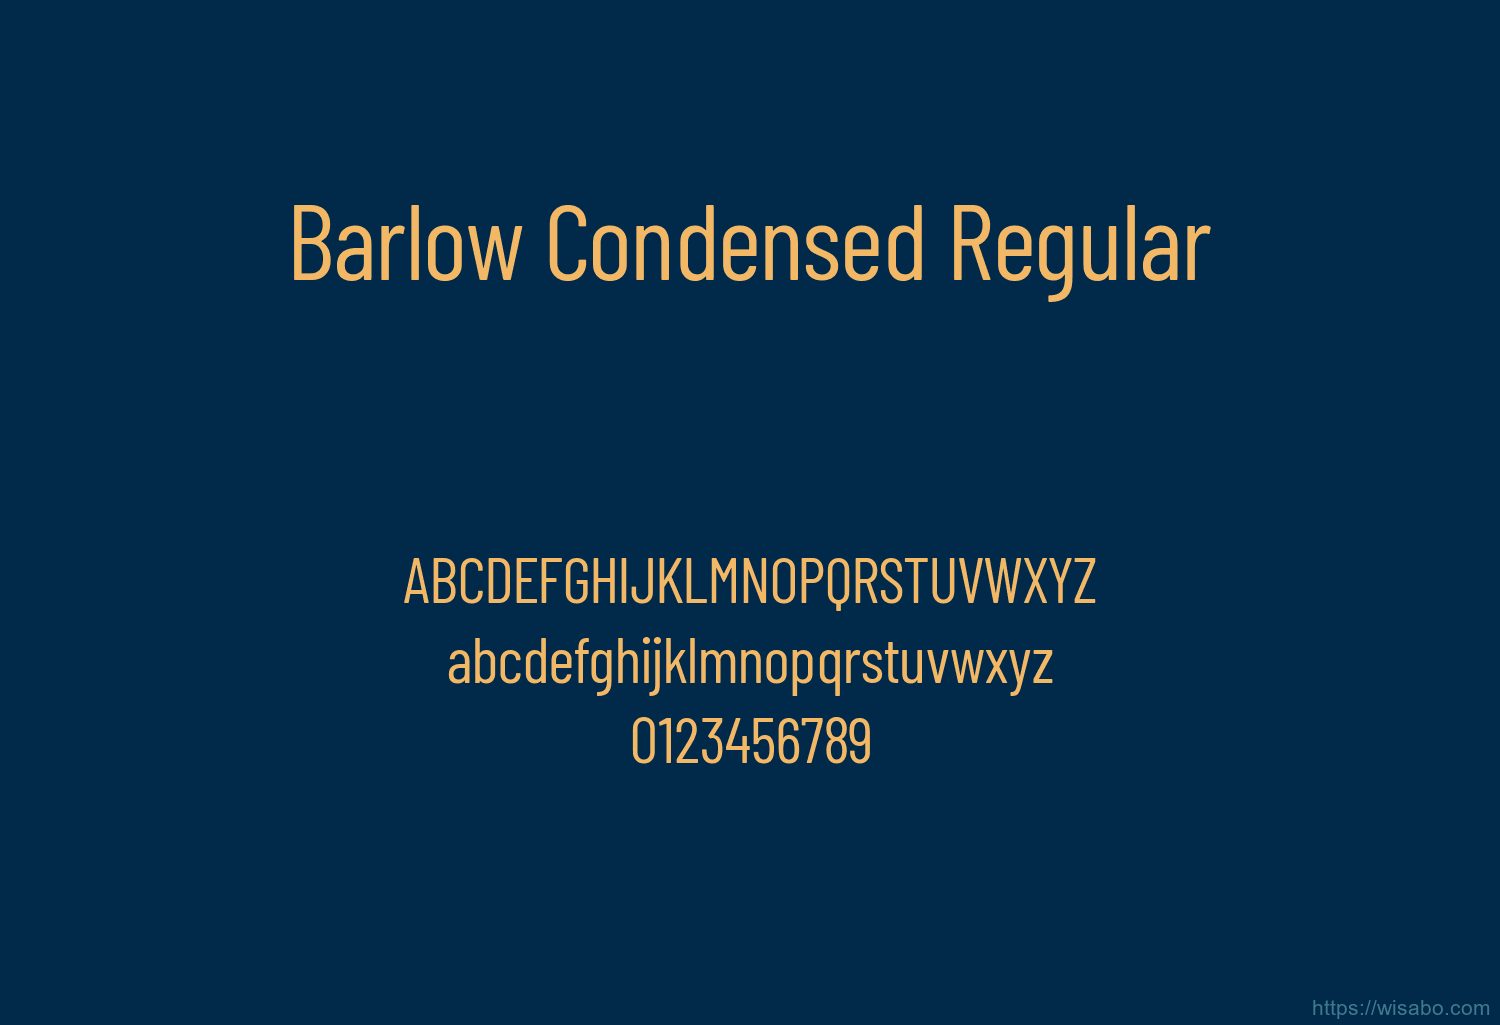 Barlow Condensed Regular